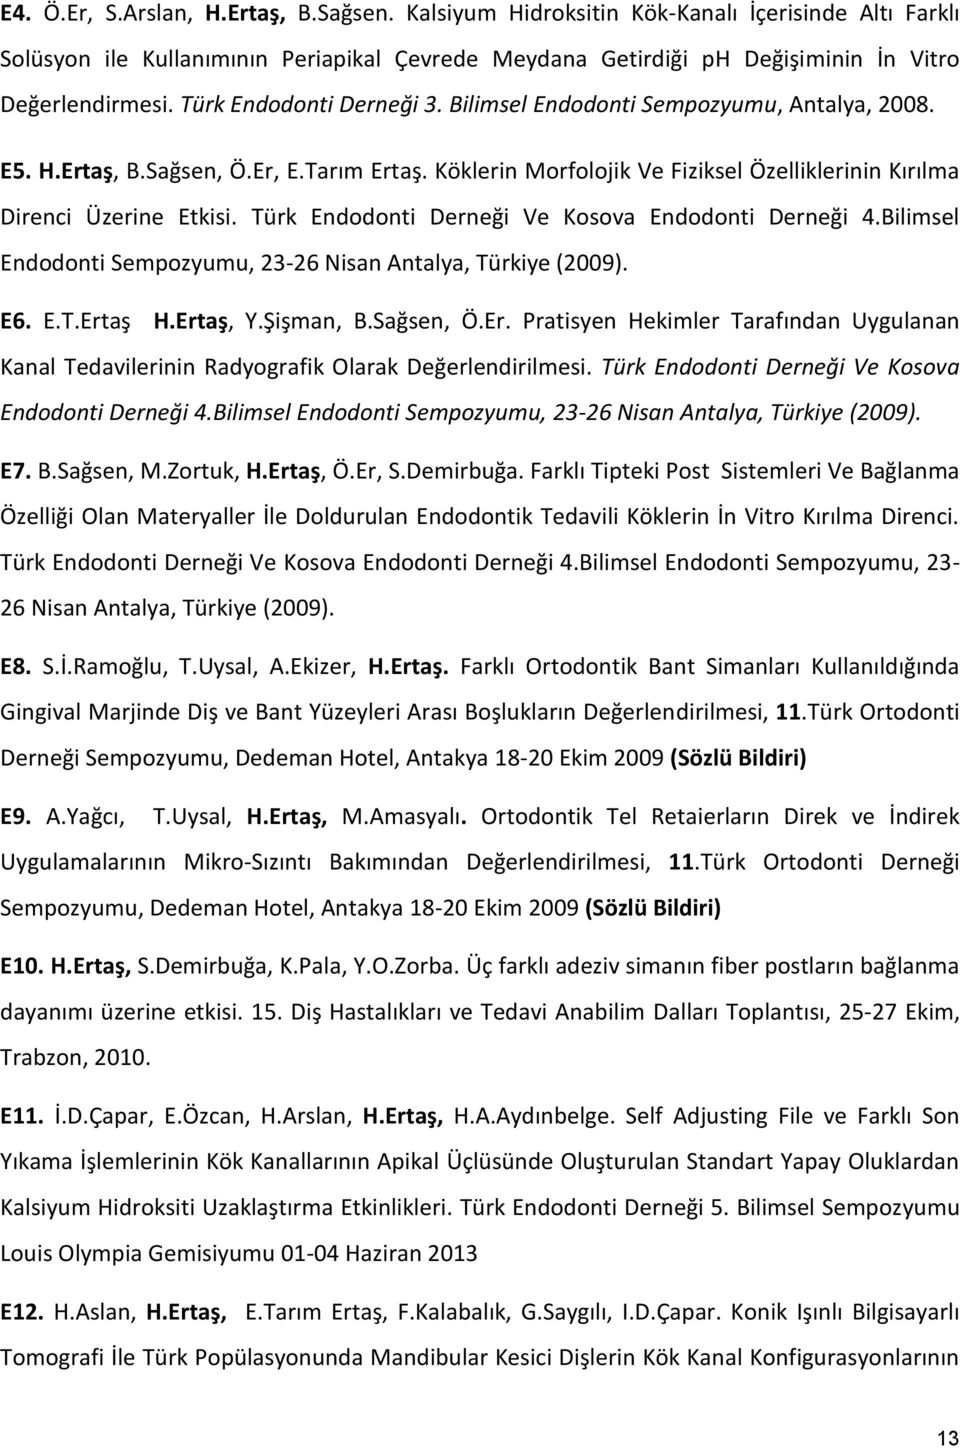 Türk Endodonti Derneği Ve Kosova Endodonti Derneği 4.Bilimsel Endodonti Sempozyumu, 23-26 Nisan Antalya, Türkiye (2009). E6. E.T.Ert